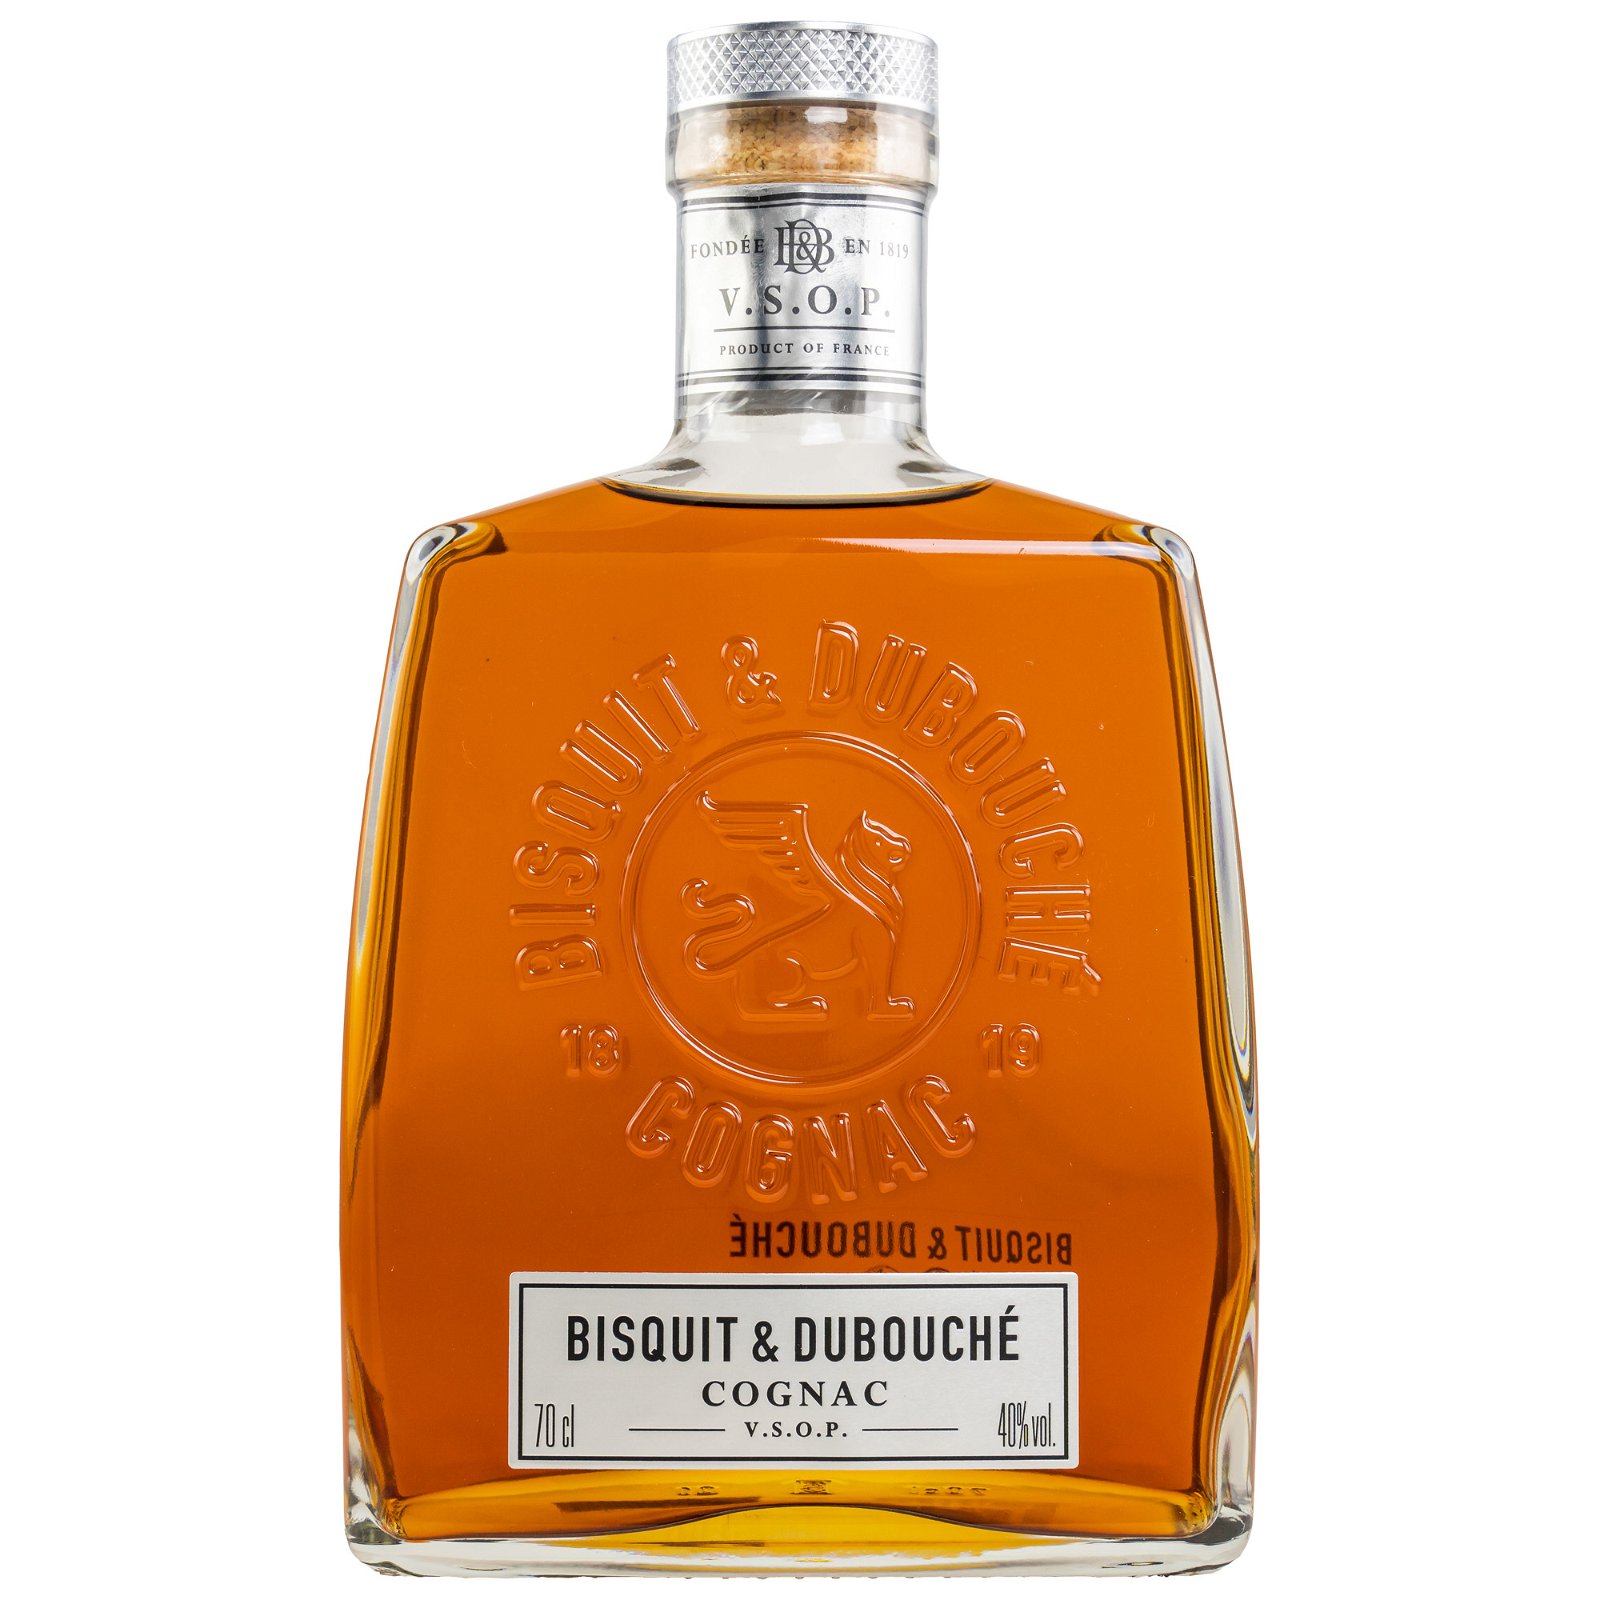 Bisquit & Dubouché Cognac VSOP